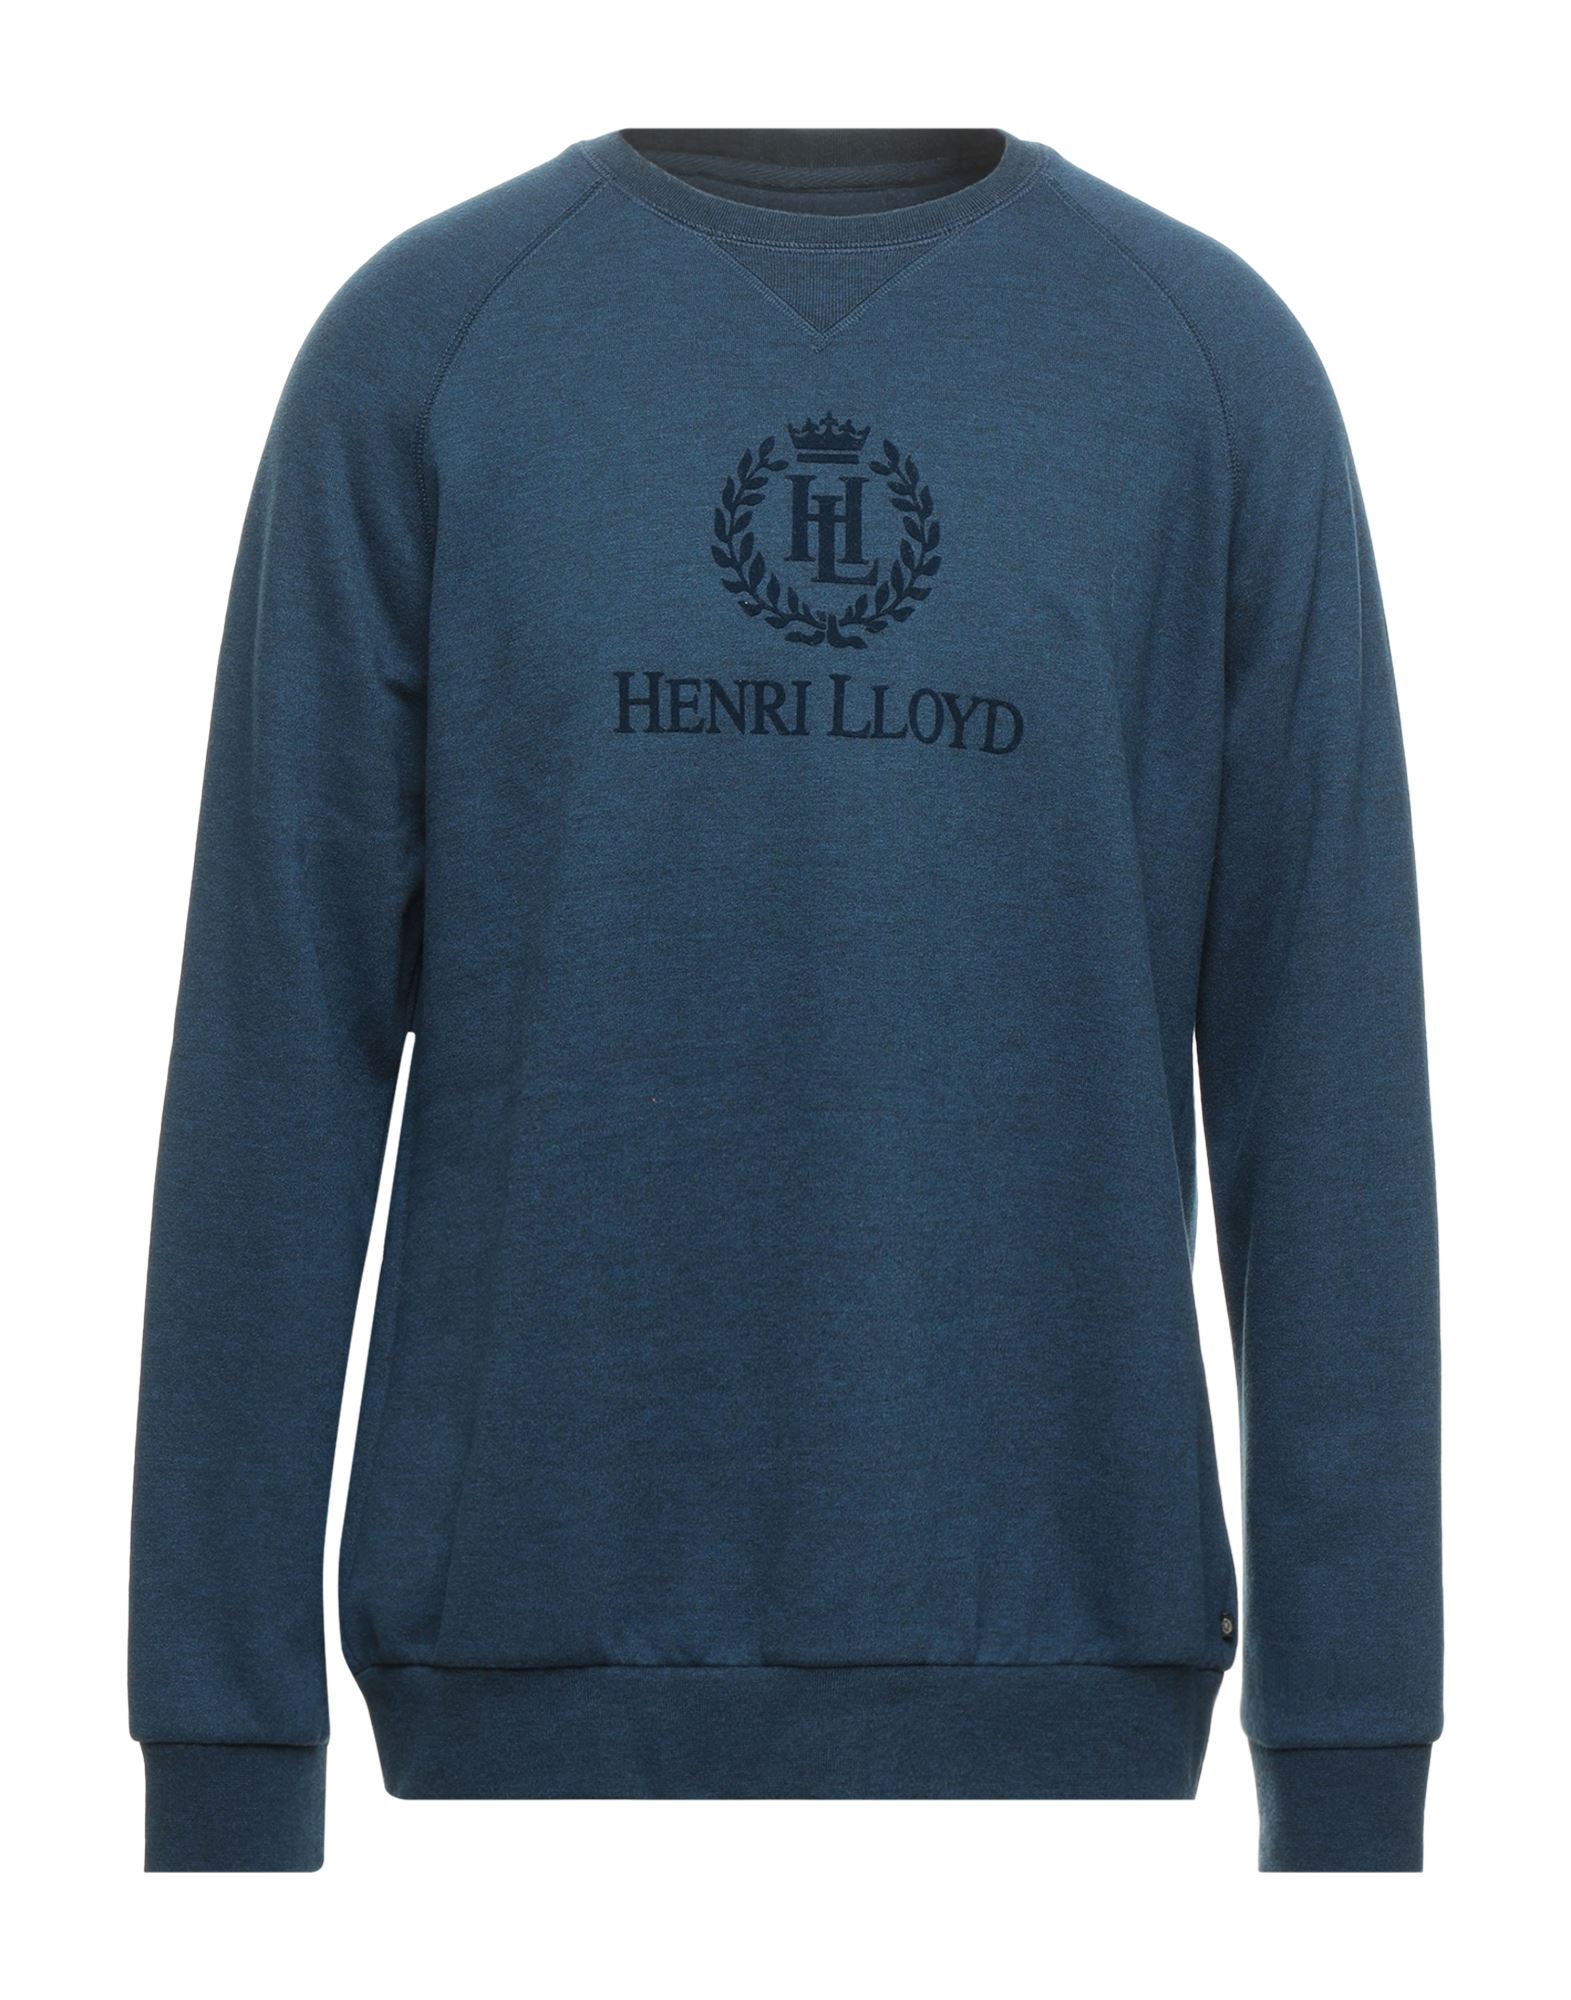 HENRI LLOYD Sweatshirts